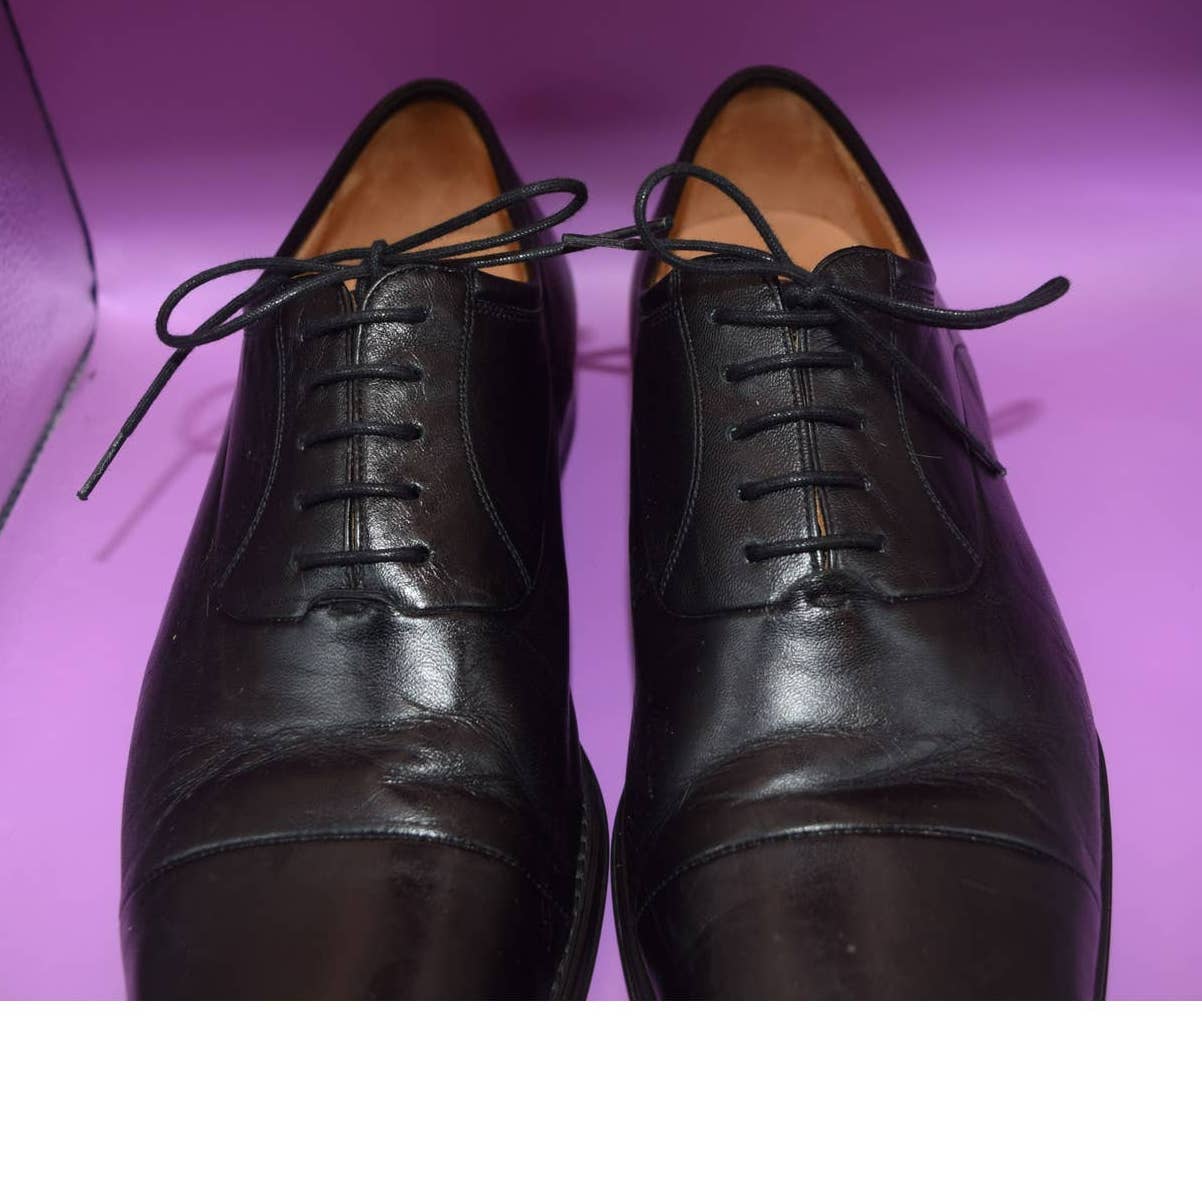 Magnanni Black Leather Cap Toe Shoes - 10.5 D